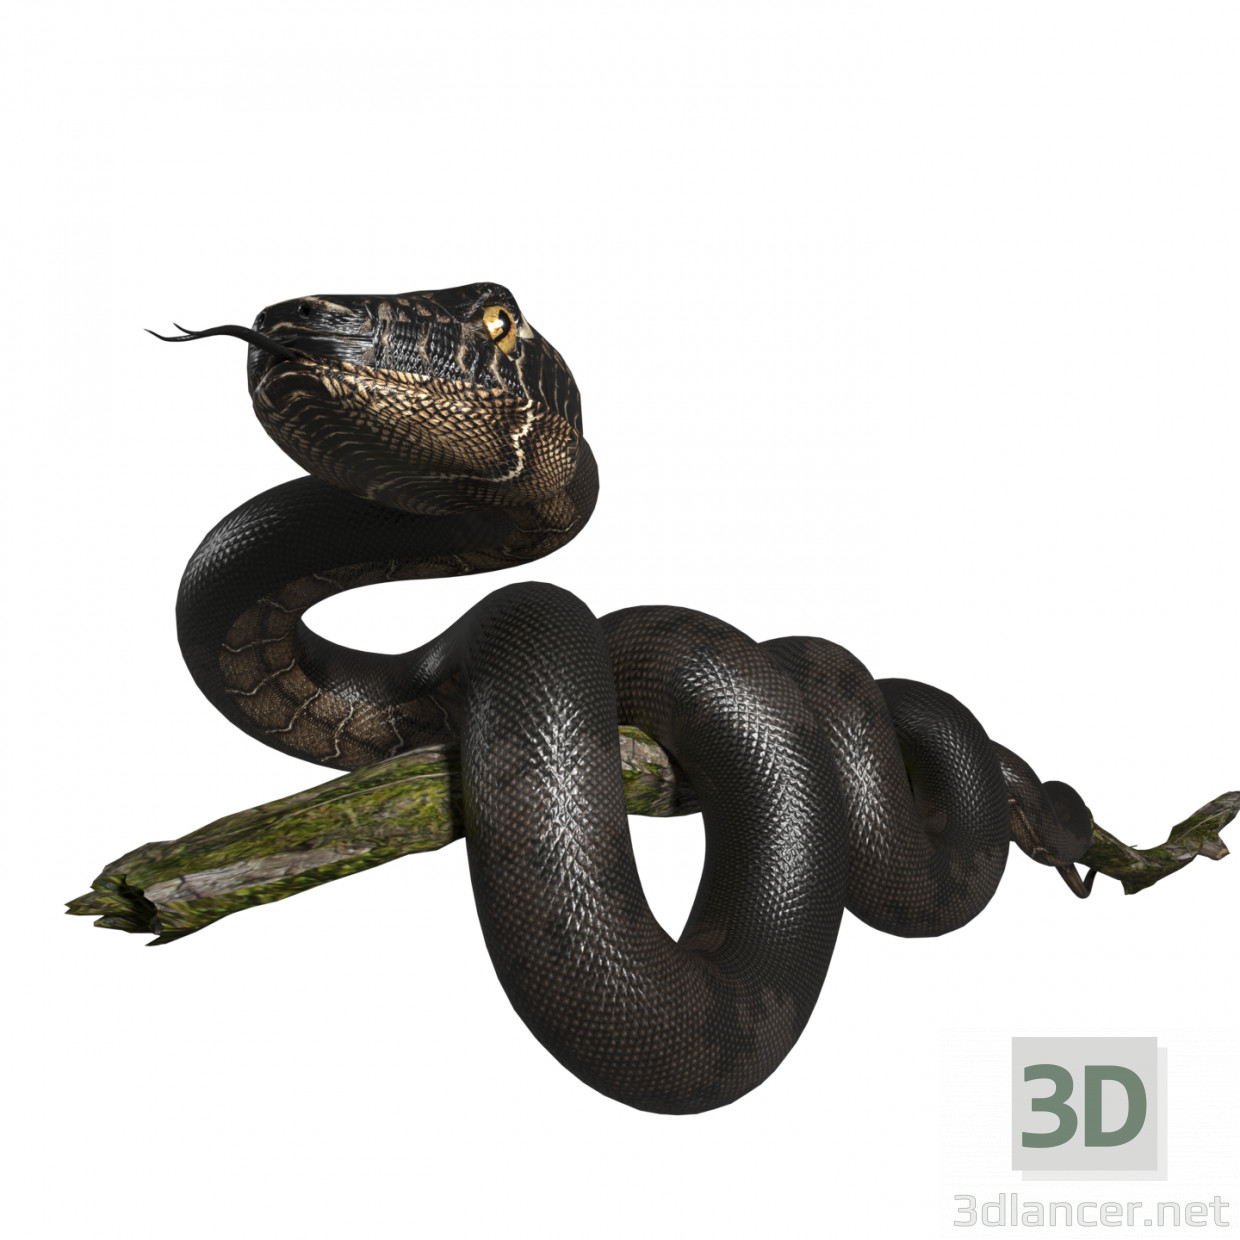 Schlange 3D-Modell kaufen - Rendern